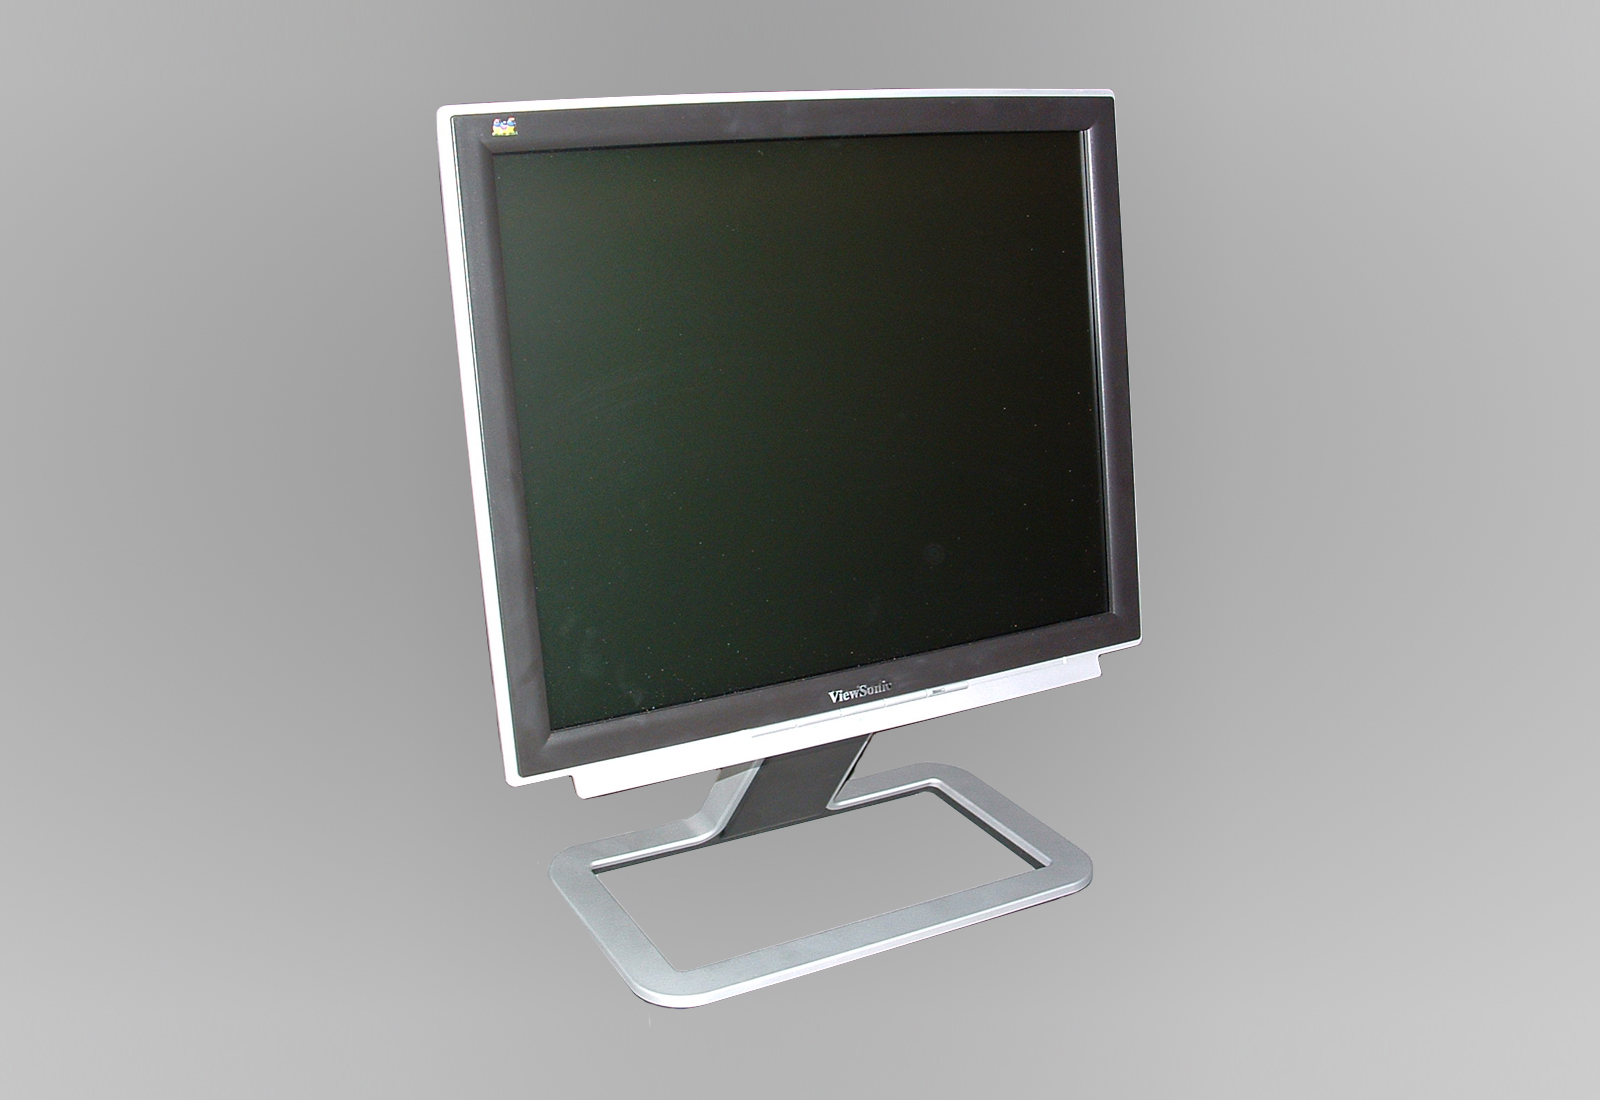 Viewsonic LCD moniteur couleur 17" VX715 modèle VS10057 